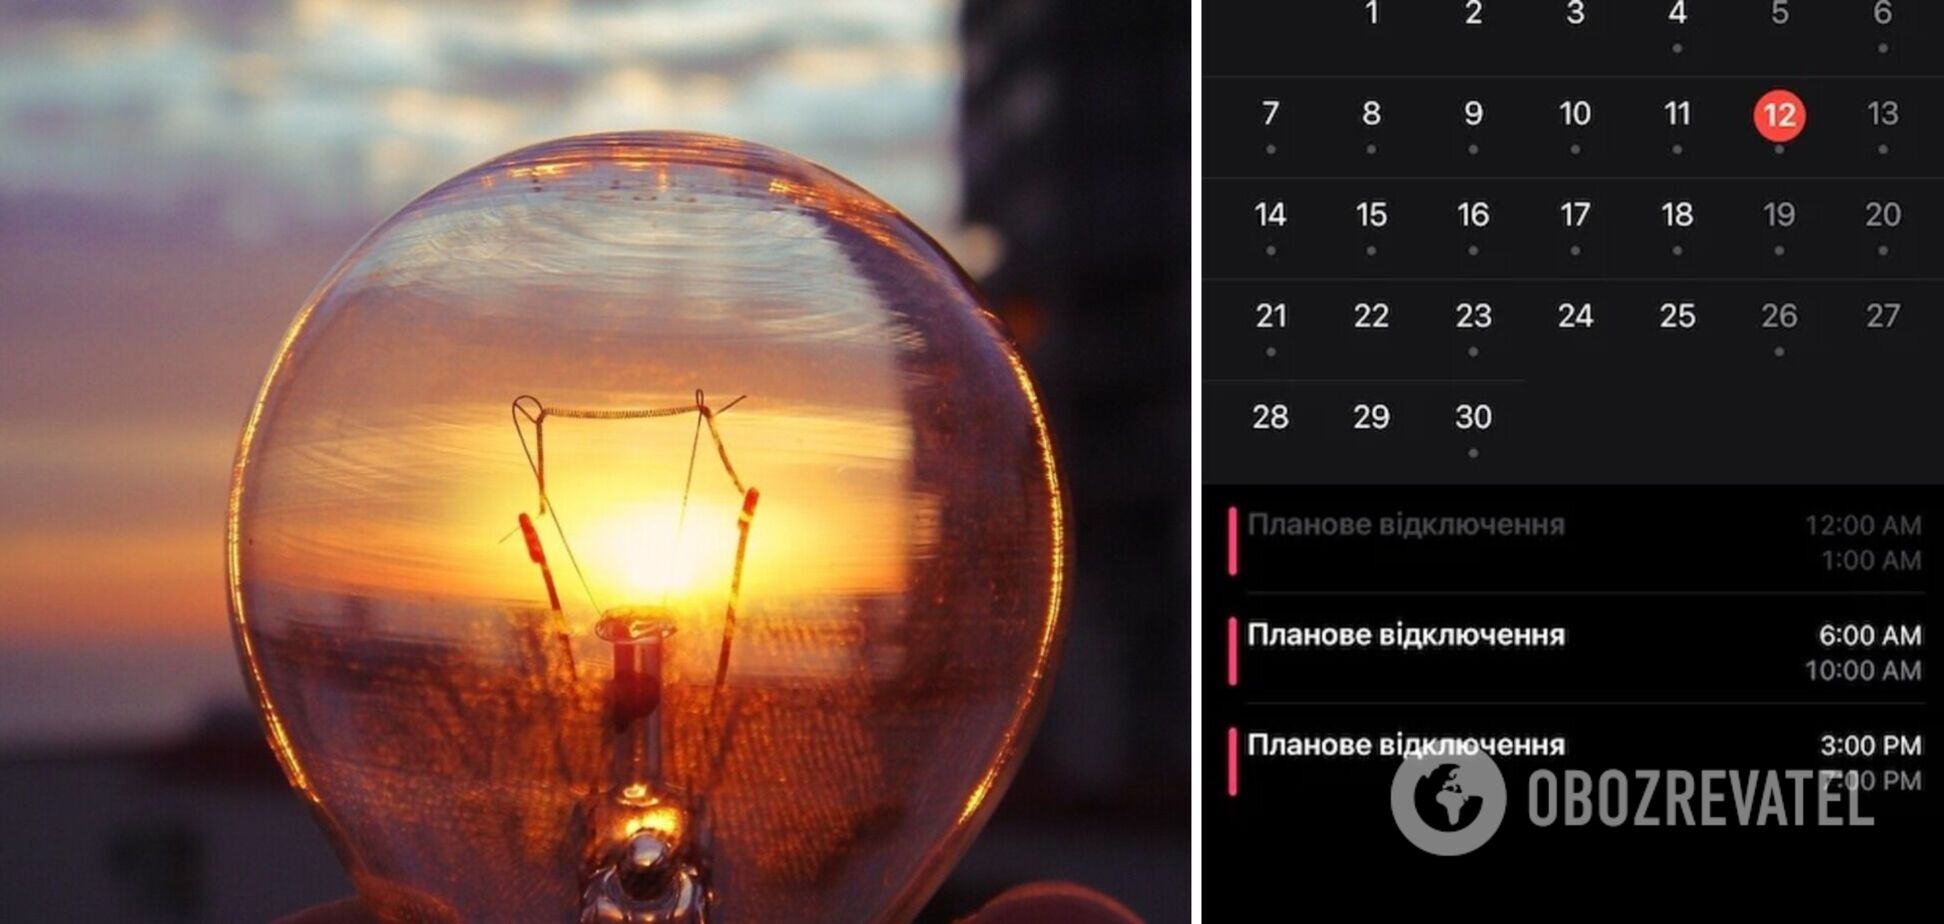 Графік відключень у Києві можна внести до календаря